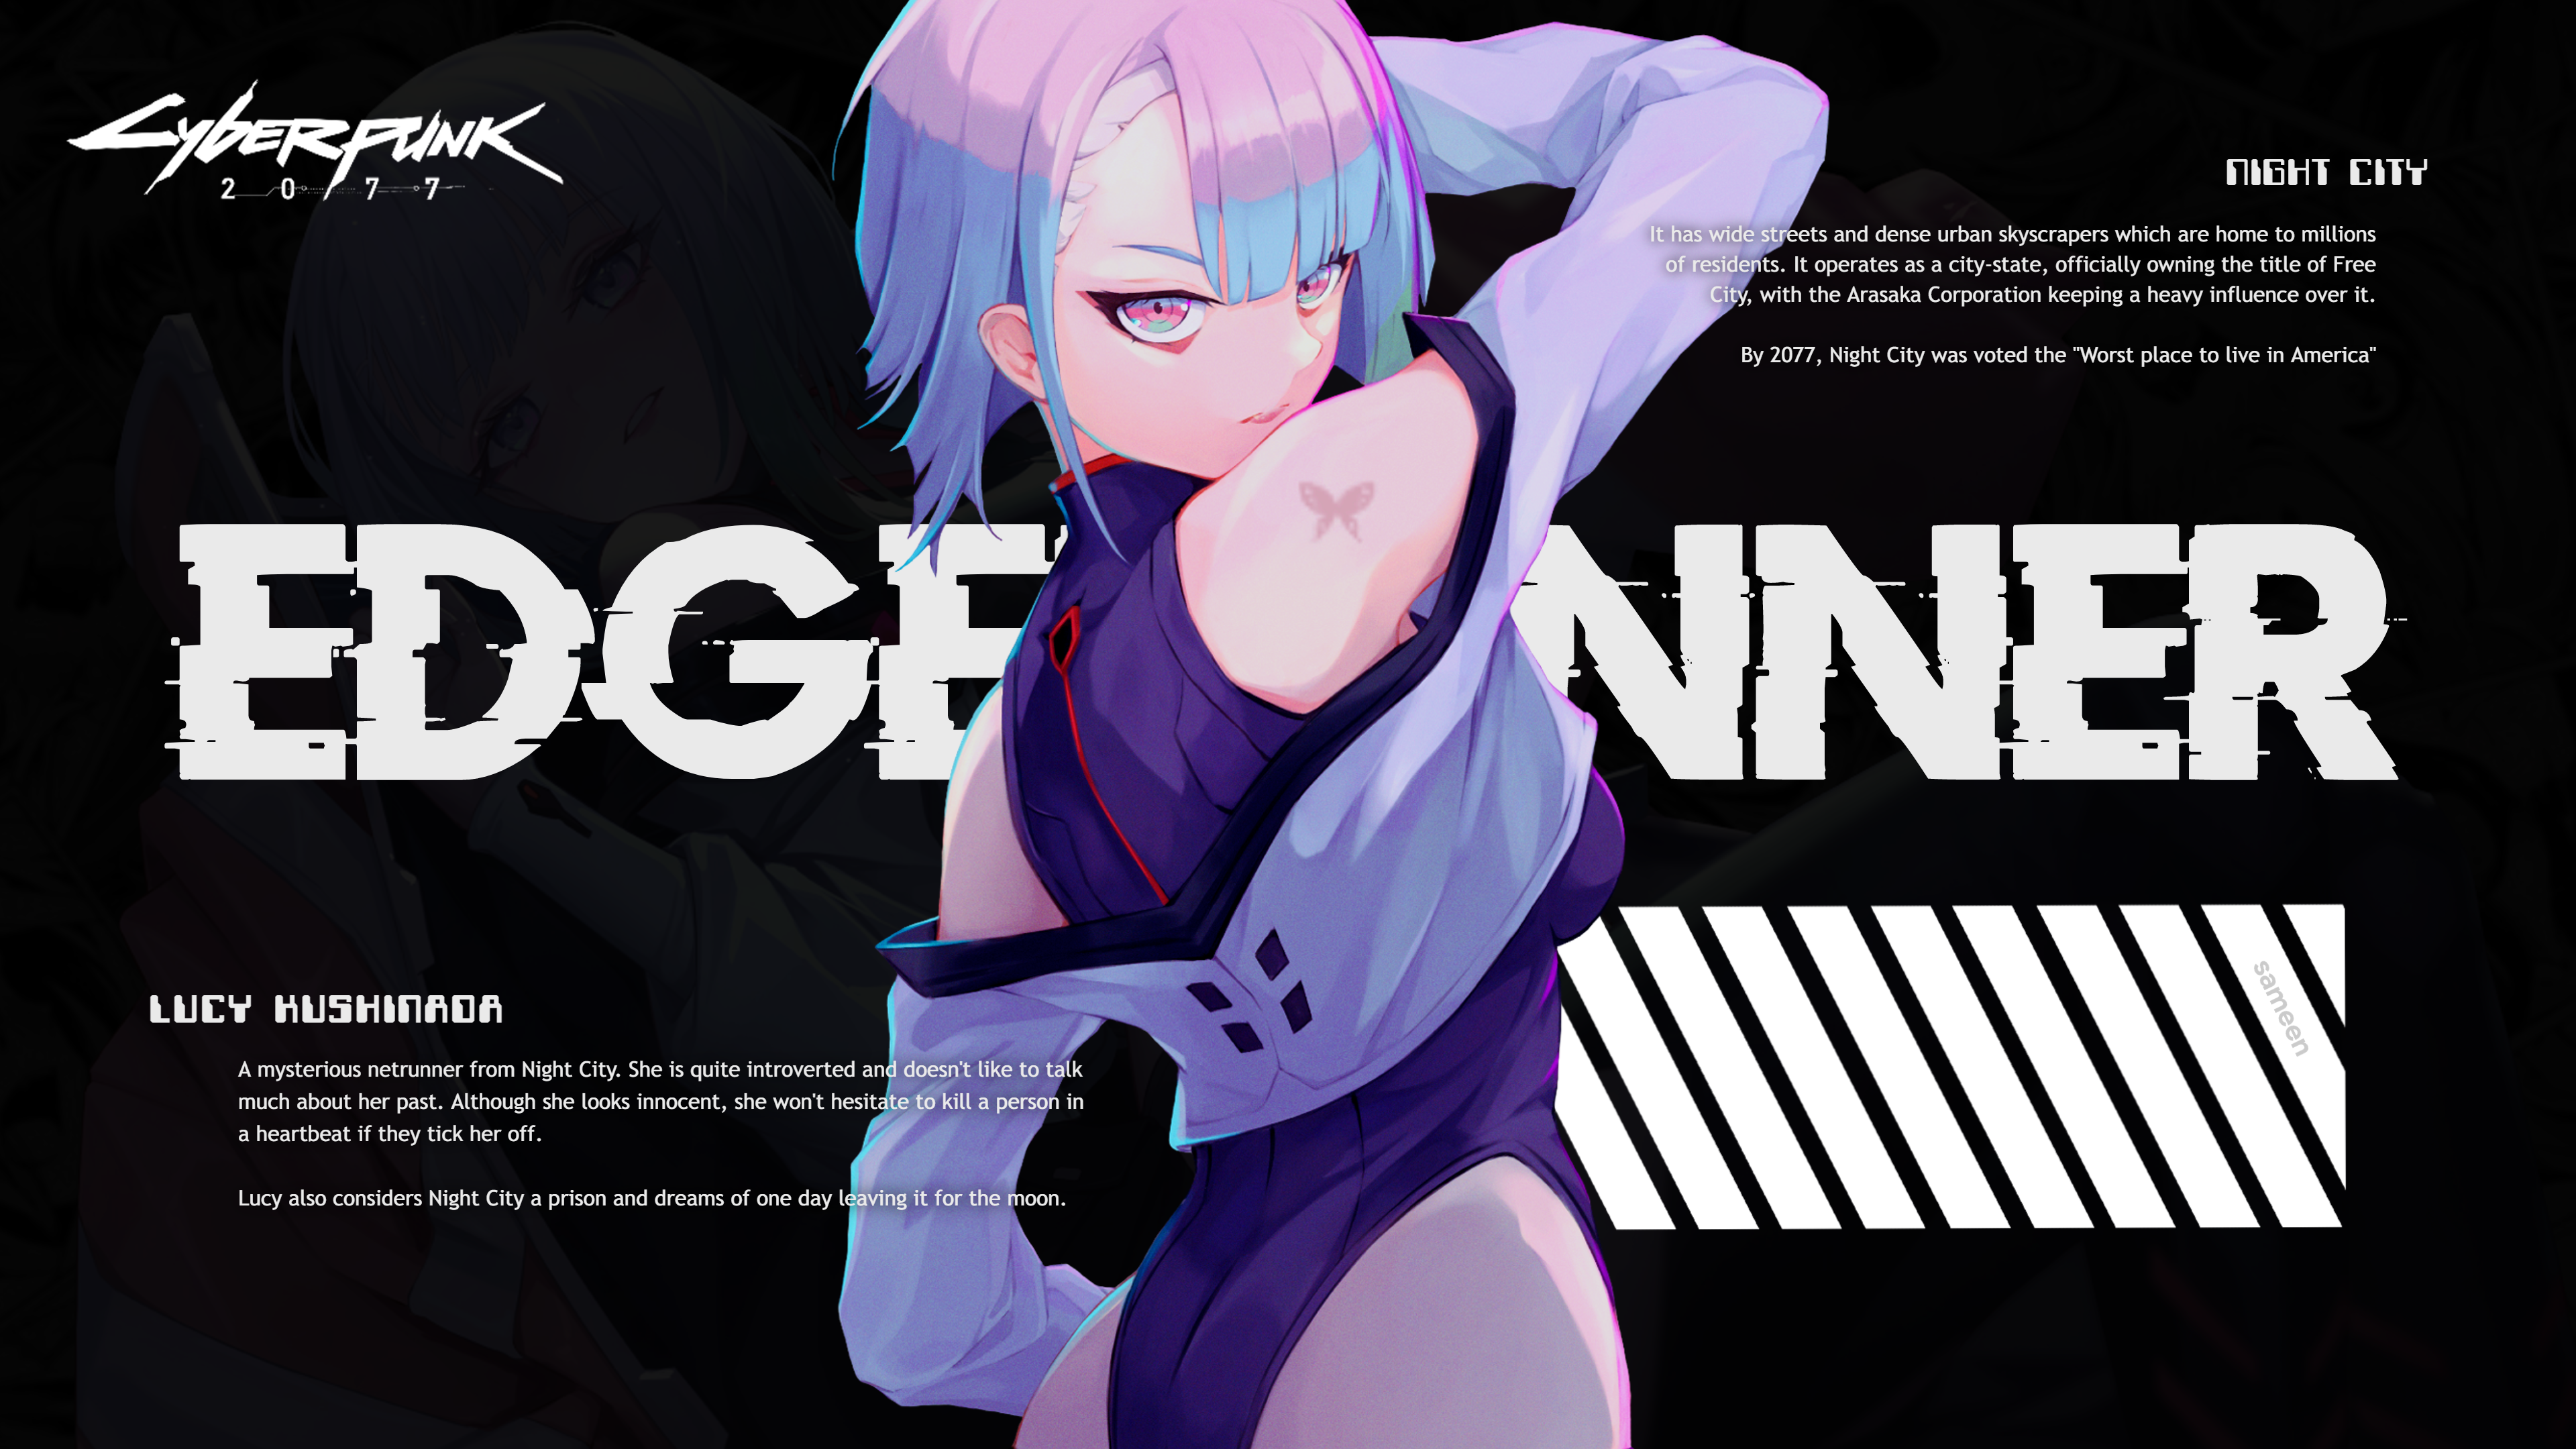 Cyberpunk Edgerunners Wallpaper by MizoreSYO on DeviantArt